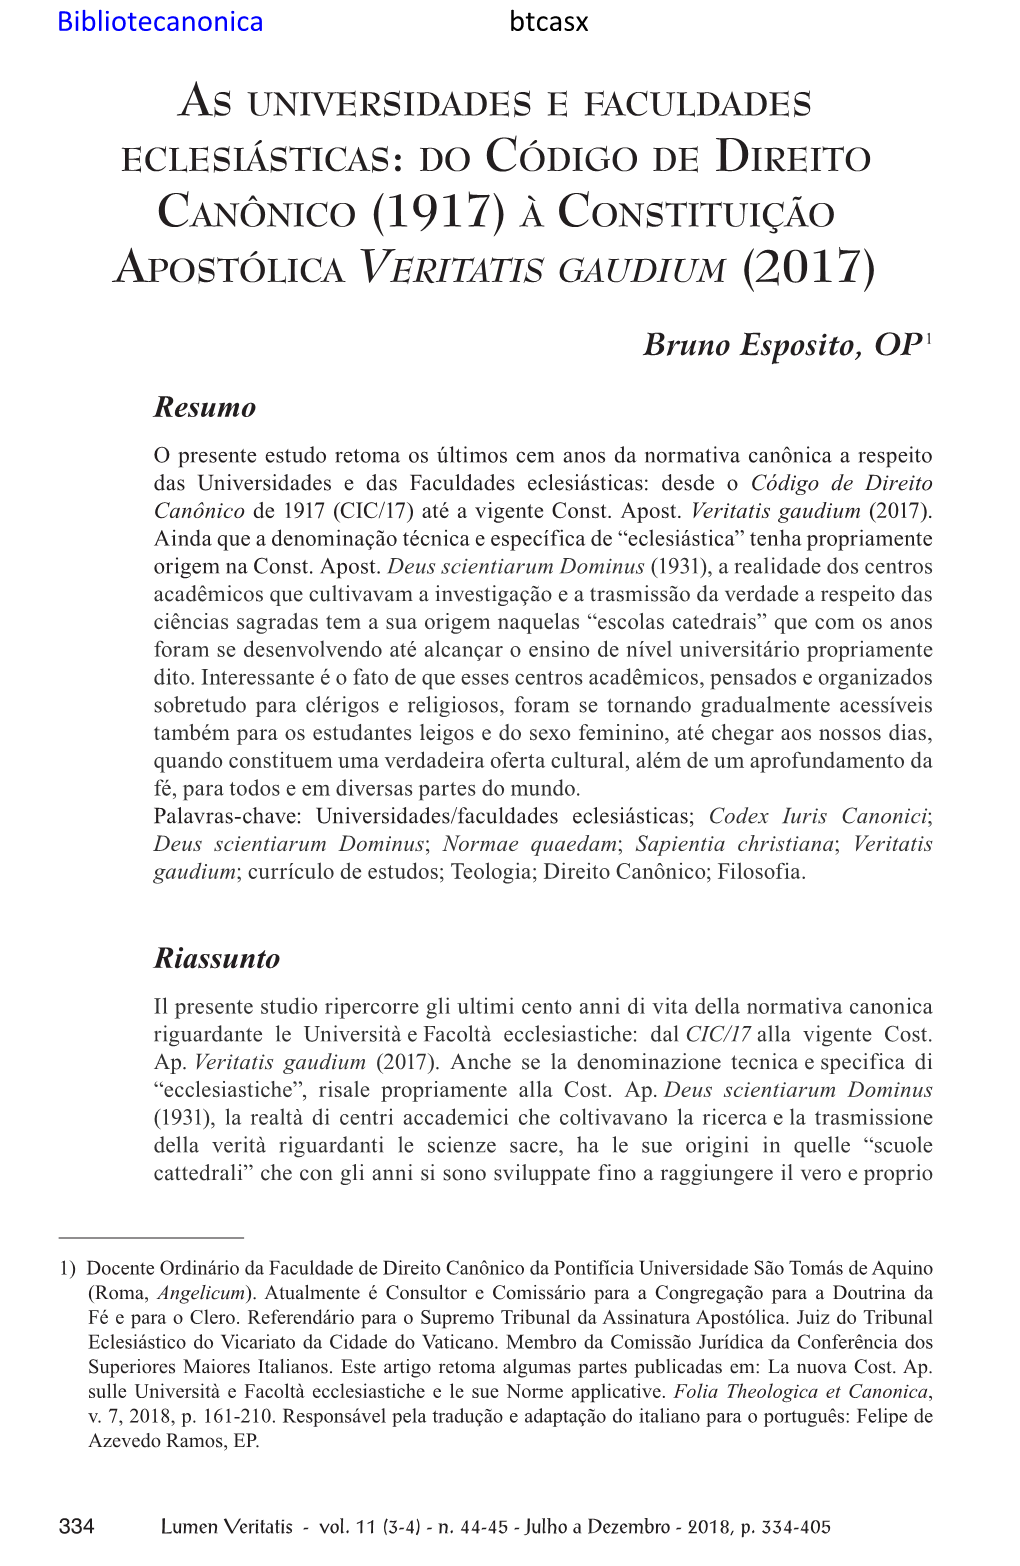 Btcasx B. Esposito, As Universidades E Faculdades Eclesiásticas